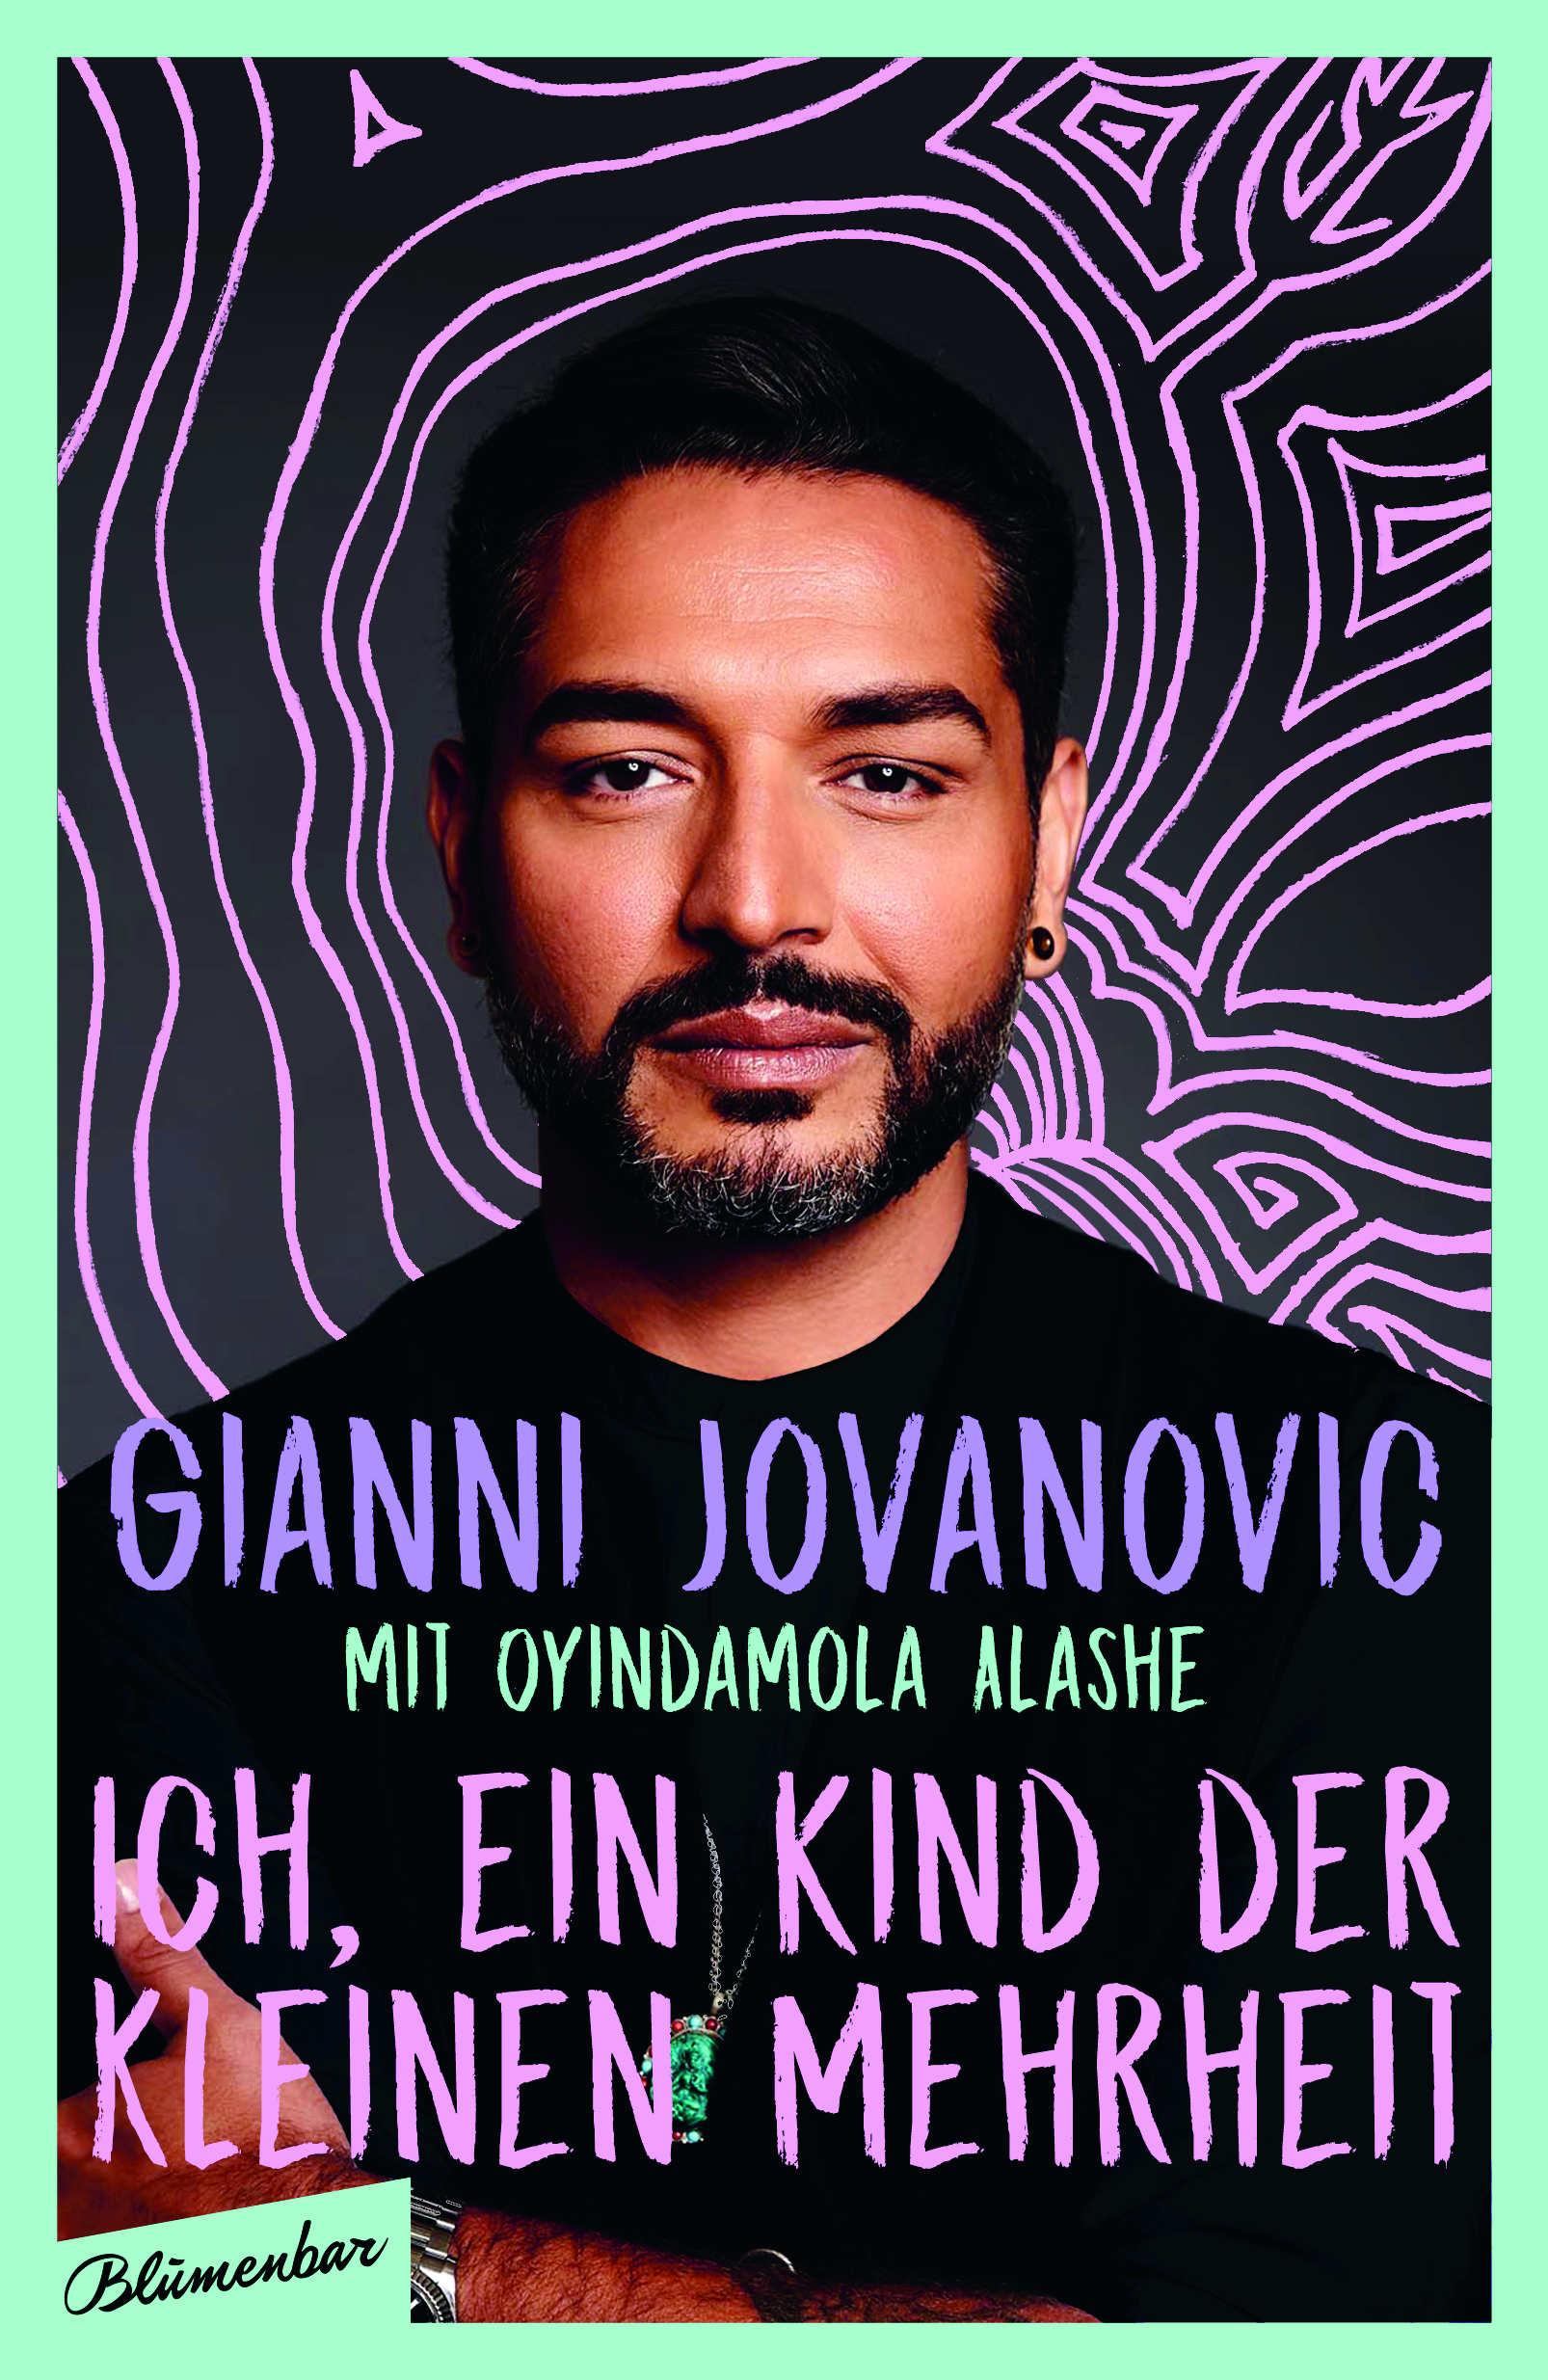 Buchcover von Gianni Jovanovic mit Oyindamola Alashe: Ich, ein Kinder der kleinen Minderheit.